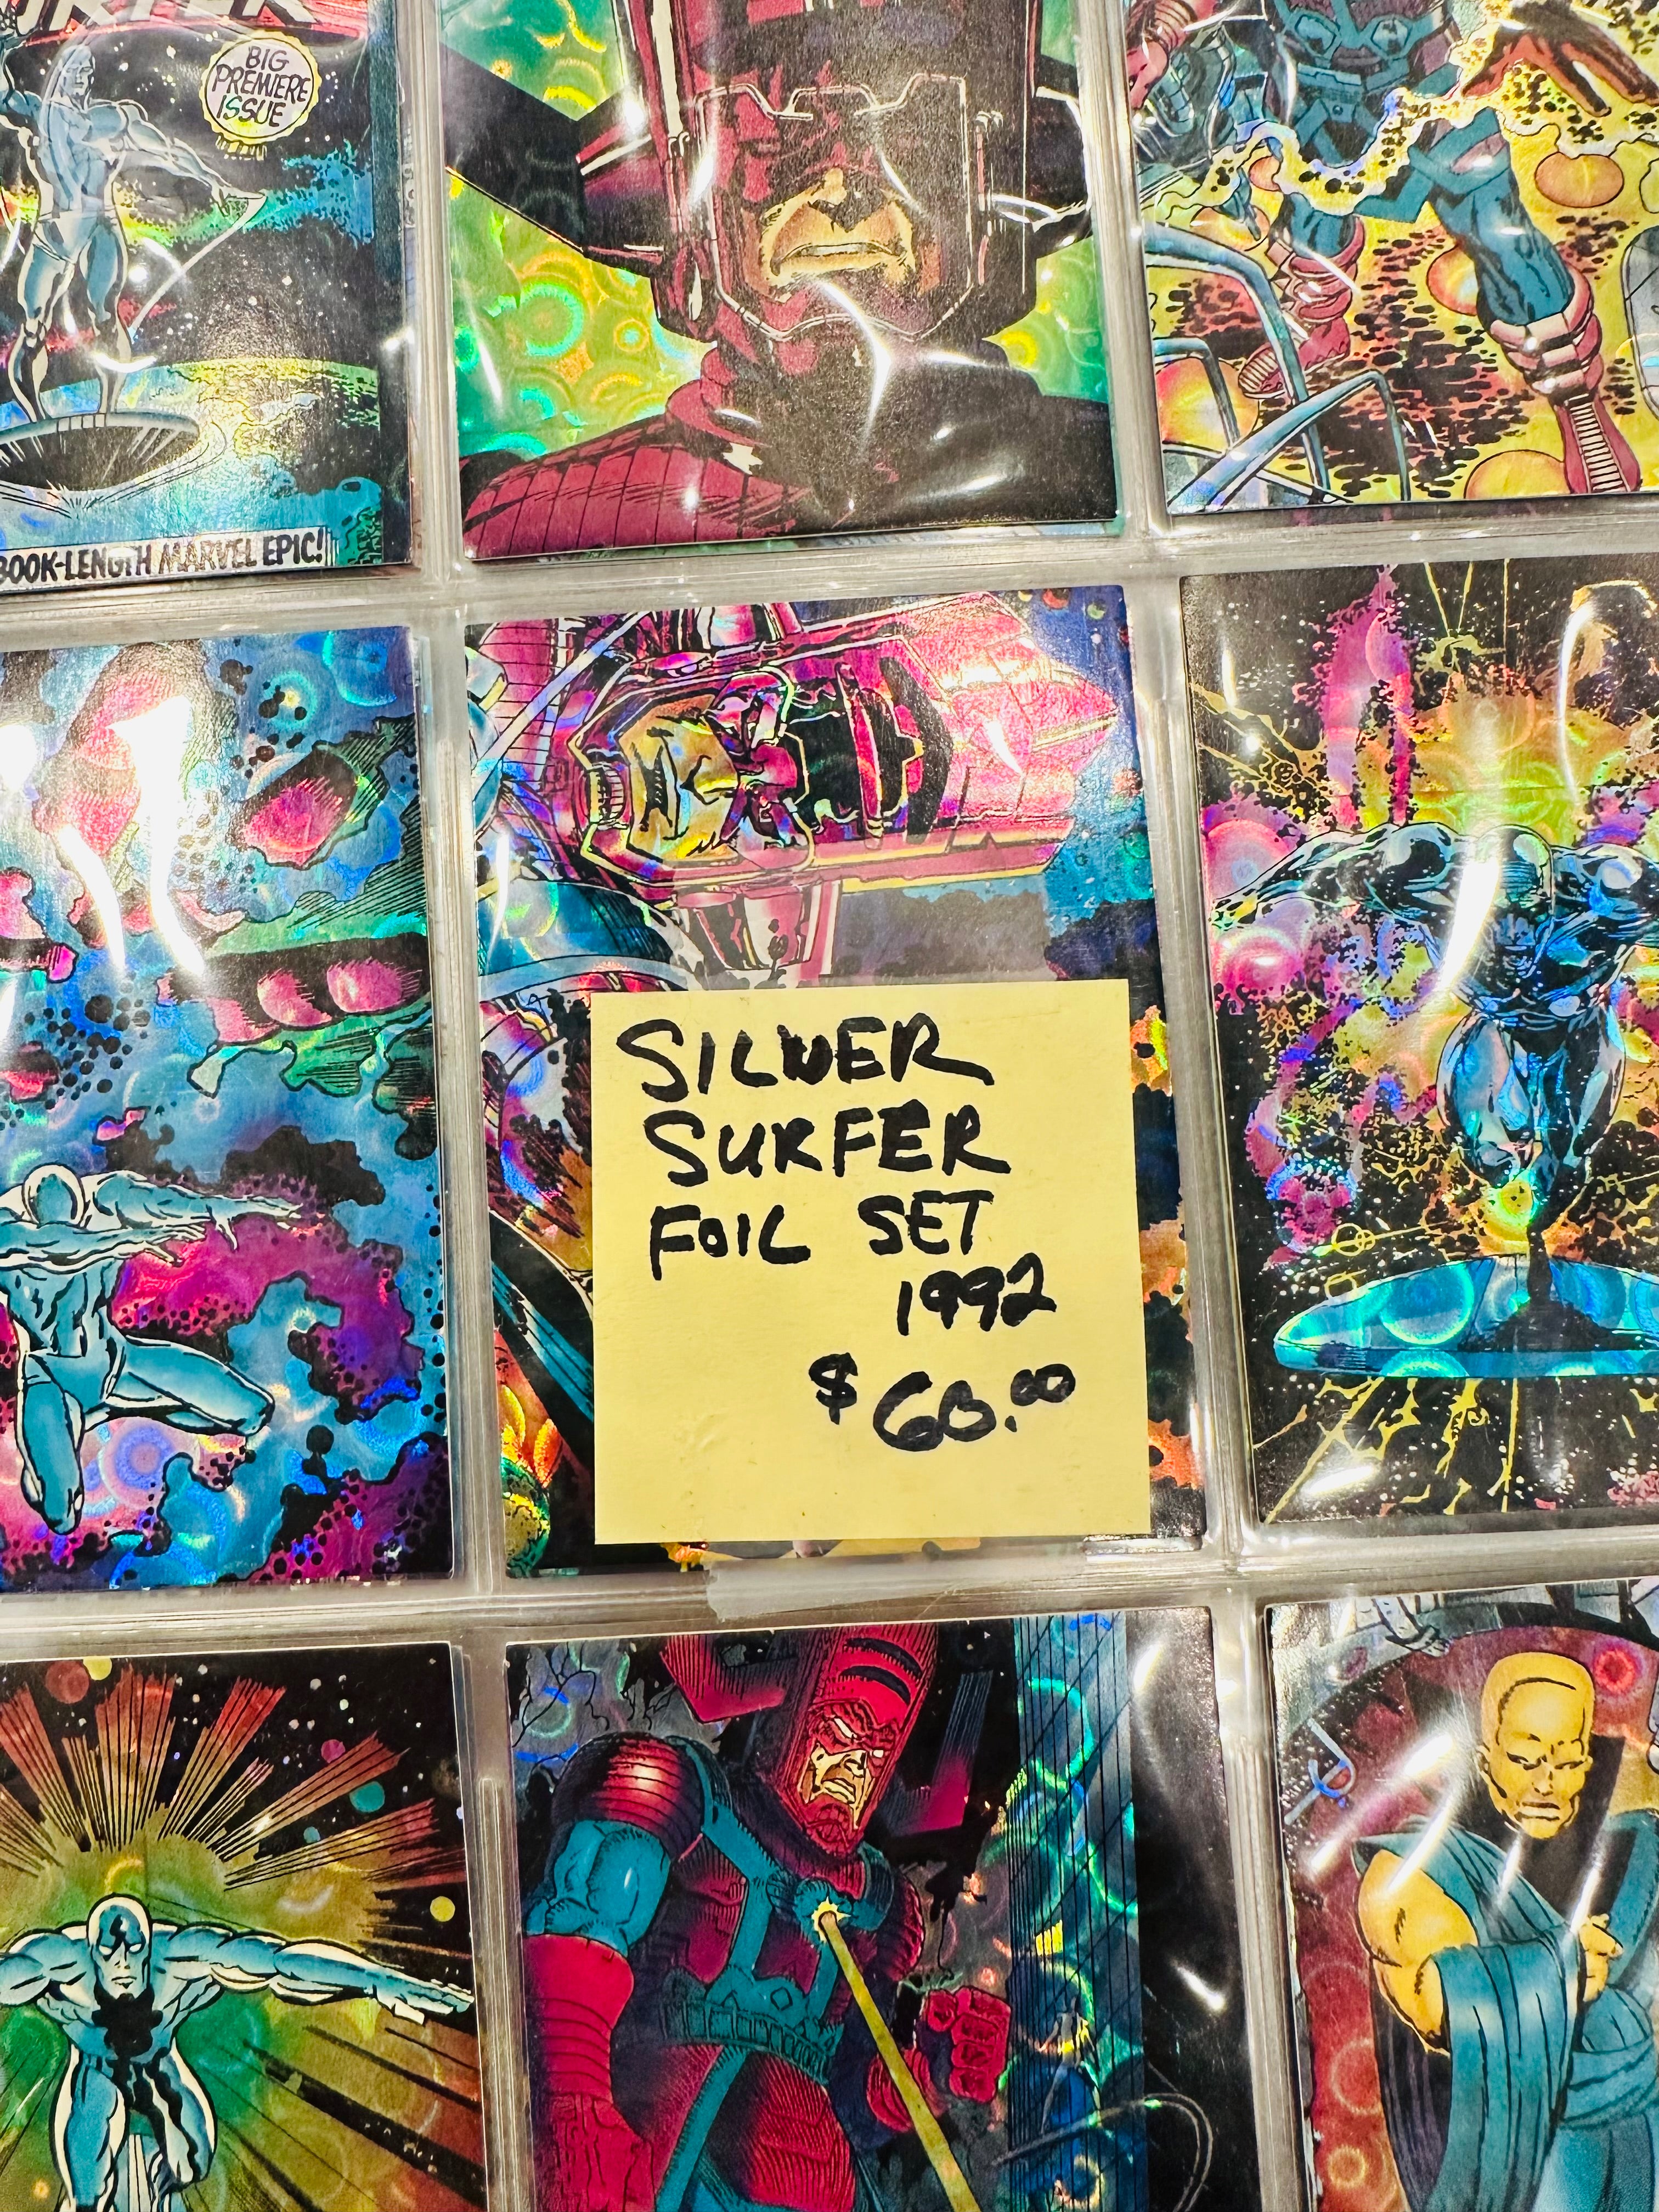 Silver surfer, marvel, superhero all foil cards set 1992